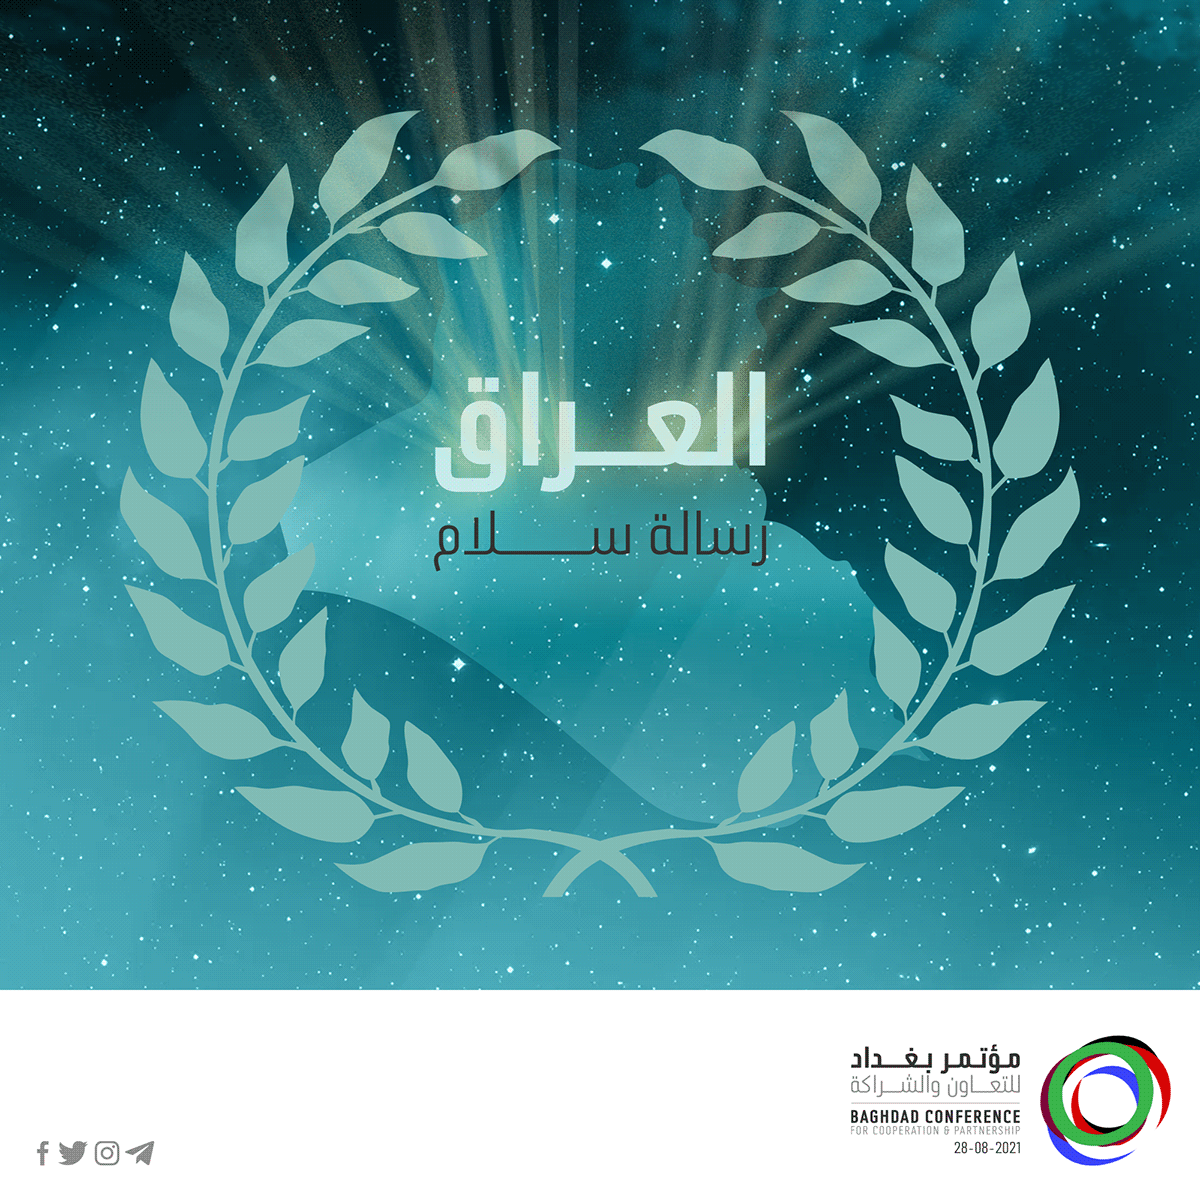 iraq conference visual identity Key Visuals campaign design brand identity Socialmedia governmental